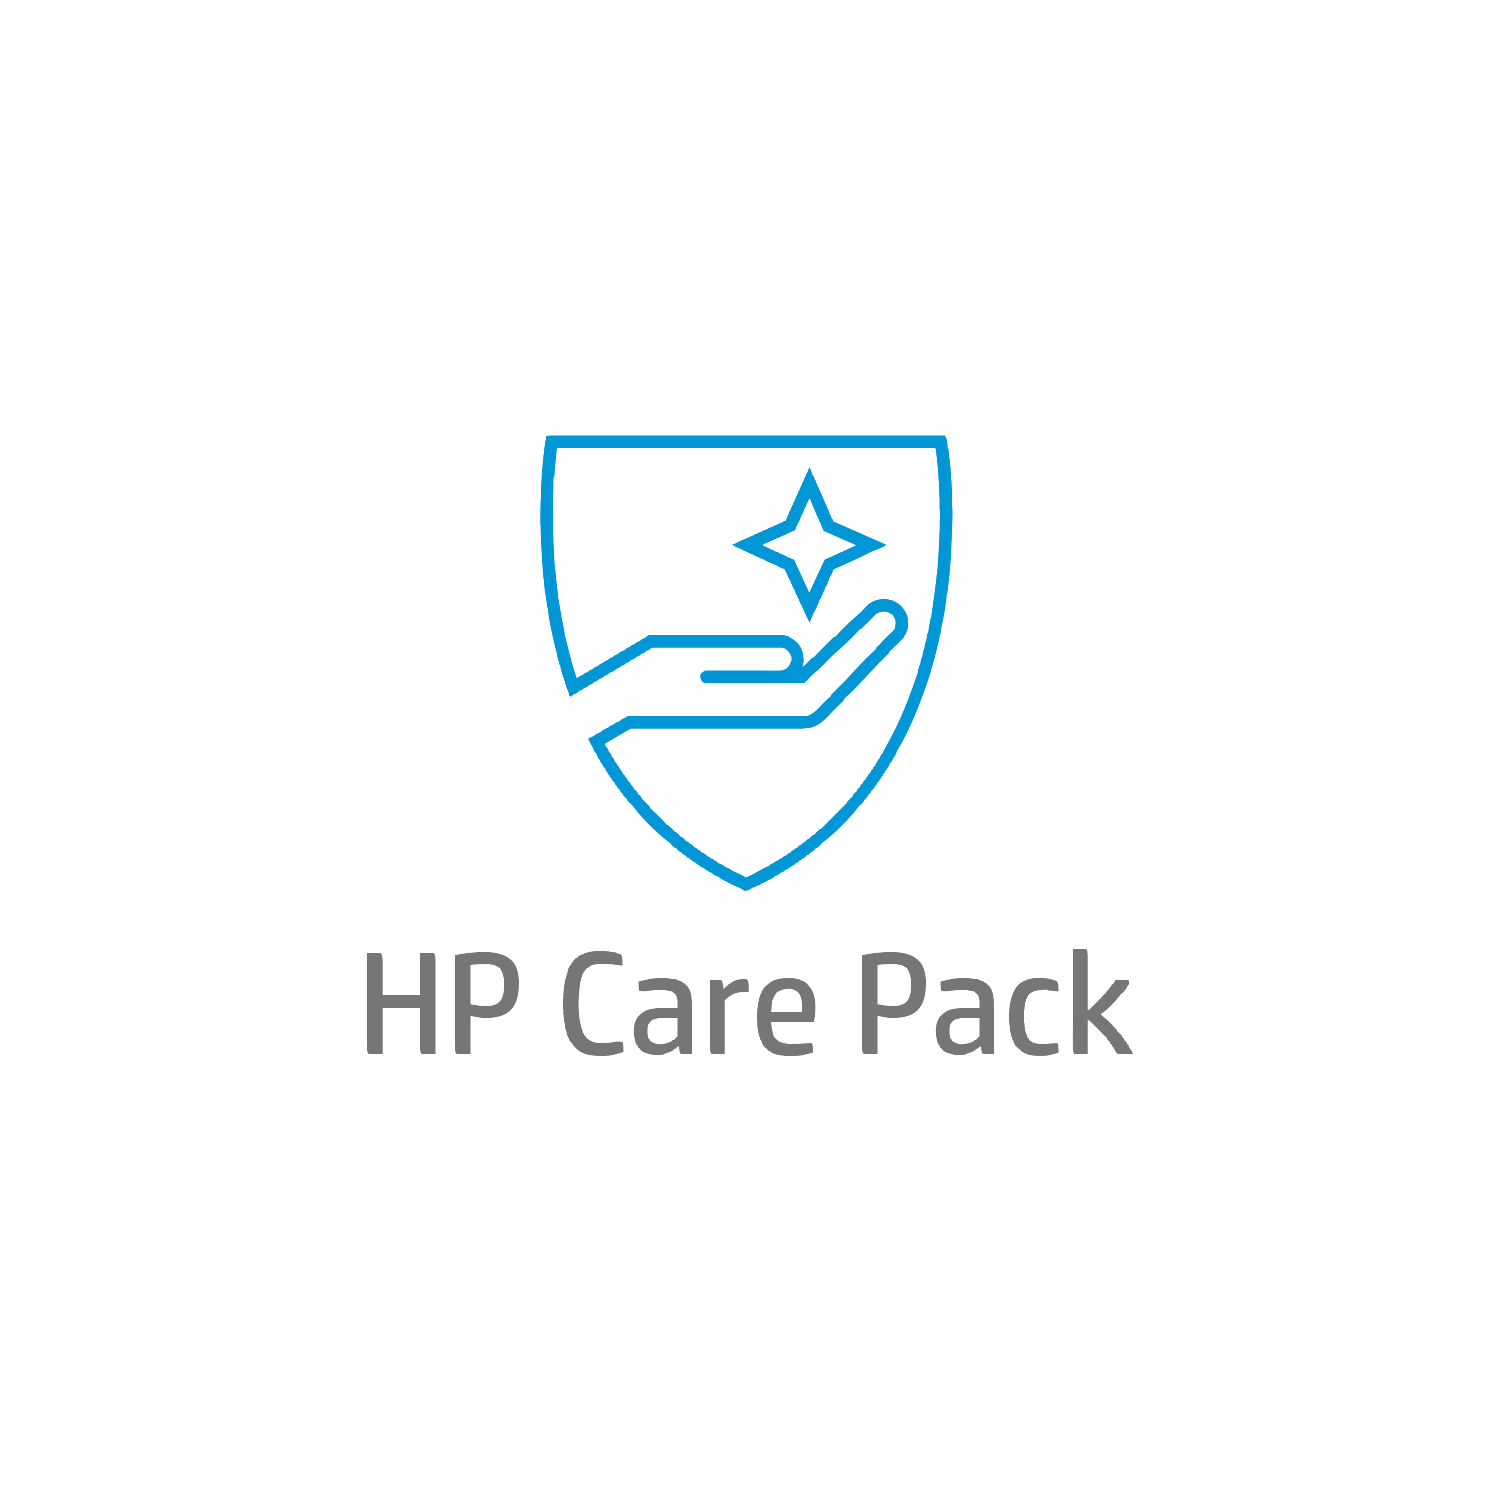 Bild von HP Care 4 Jahre Solution-Support mit Einbehaltung defekter Medien für Mobile Workstations - Externe Reparatur - Außerhalb des Kundenstandorts - Unter Garantie - Standardarbeitstage - 9 Stunden - 4 Jahre - Reparatur innerhalb von 3–7 Werktagen